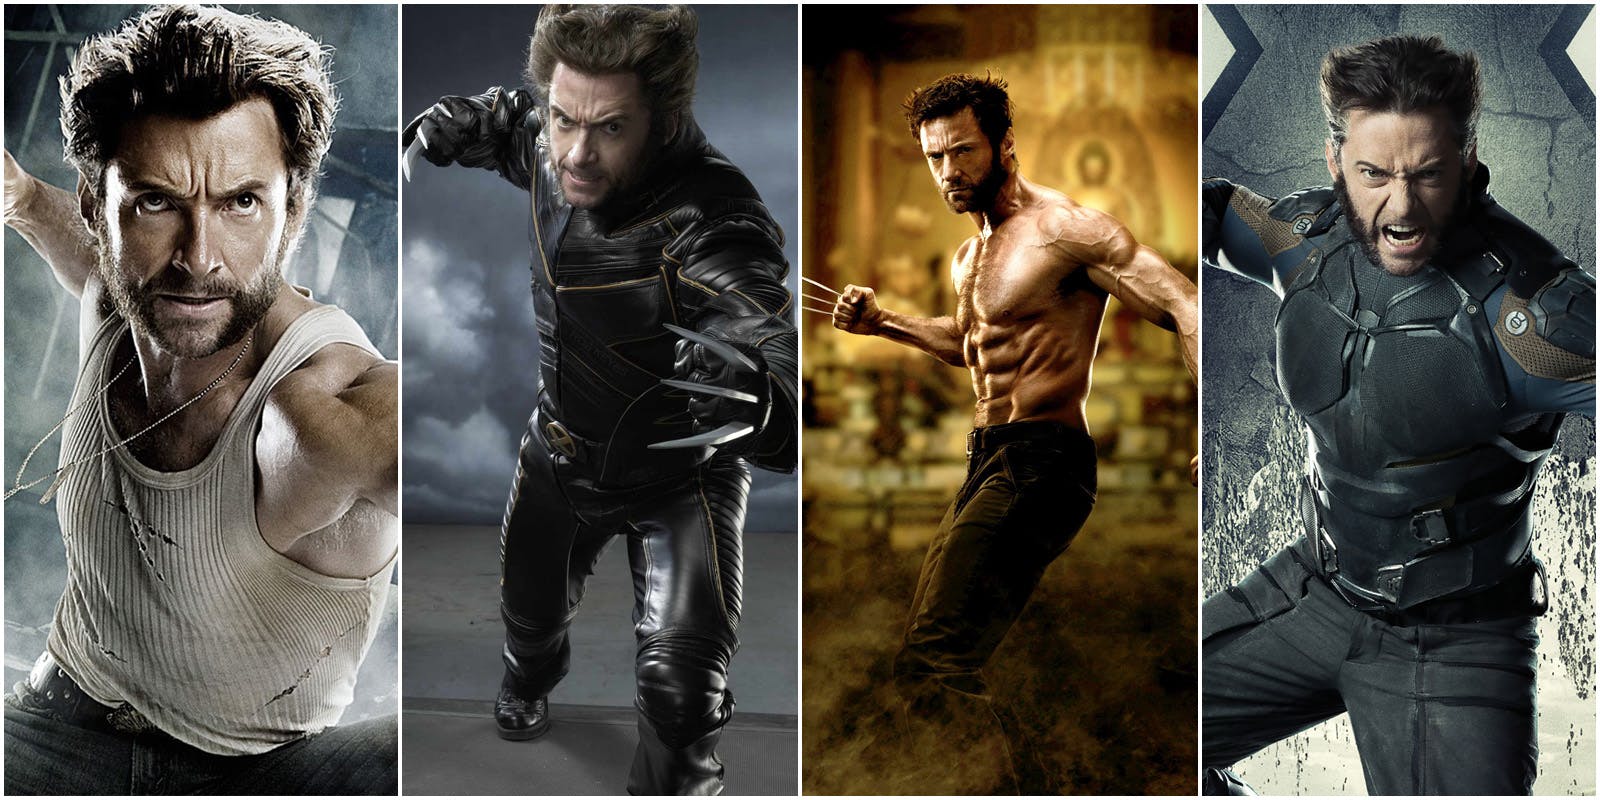 Hugh Jackman cetak rekor dunia berkat perannya sebagai Wolverine di serial X-Men.